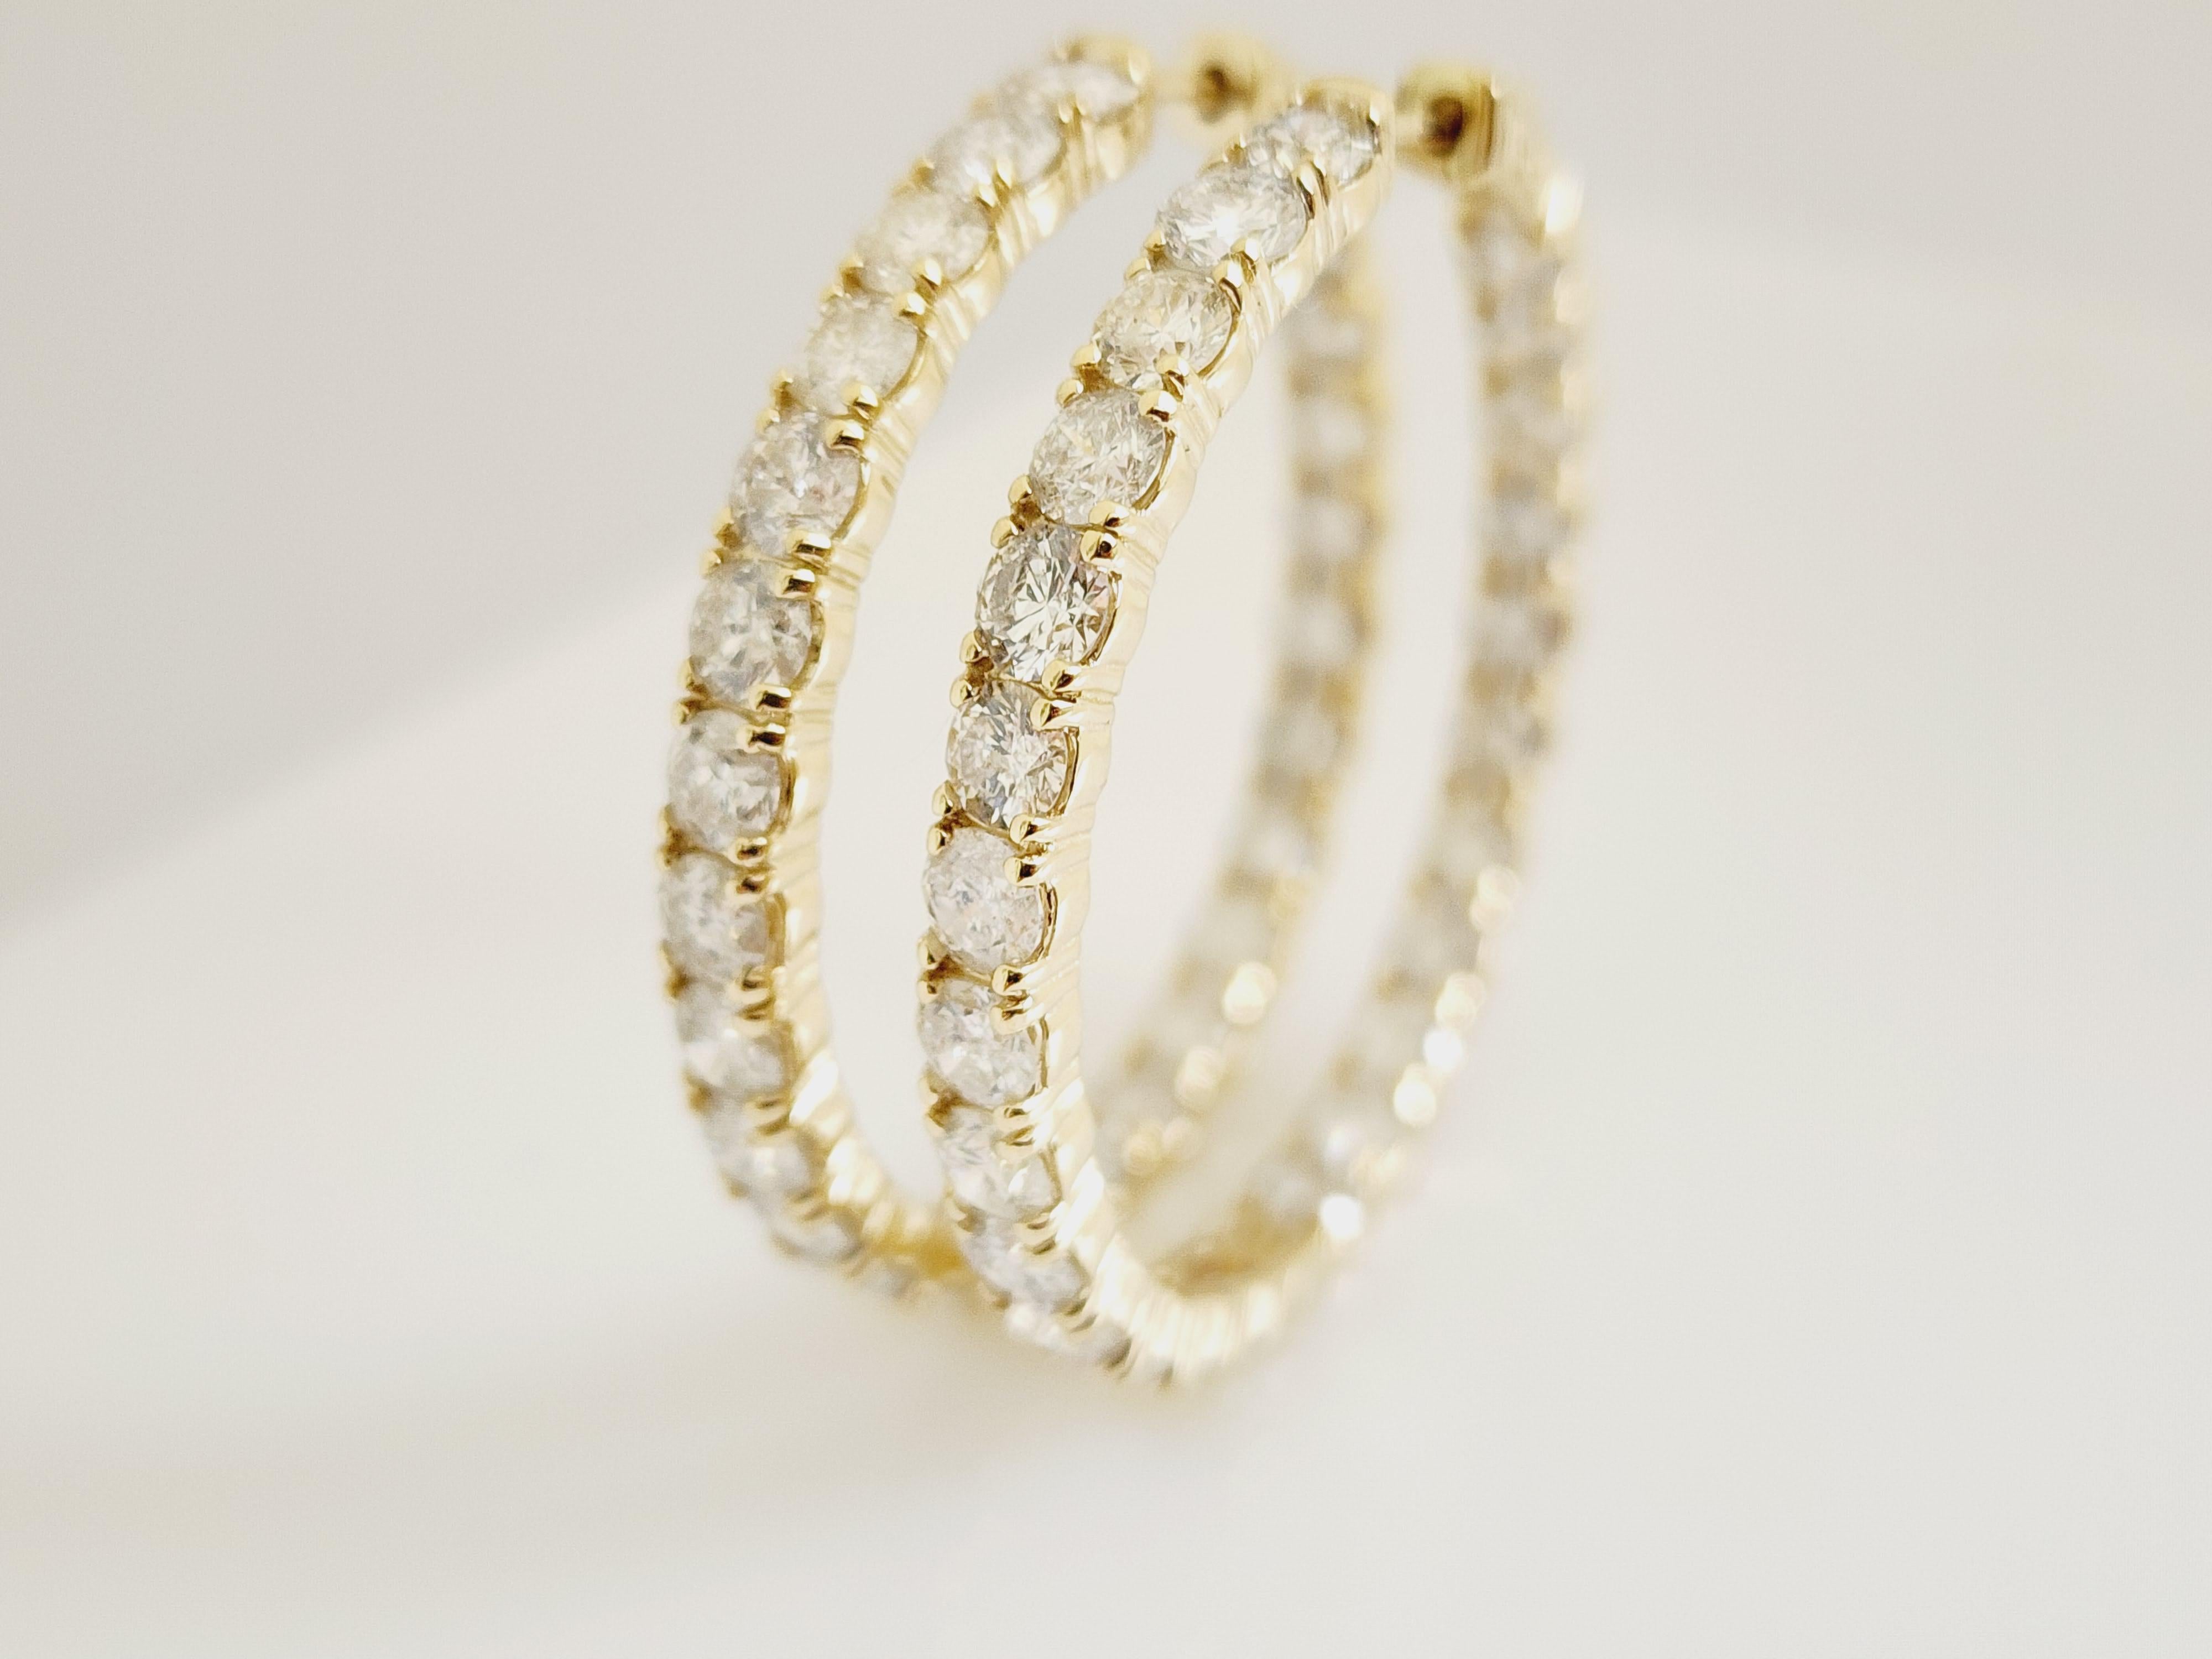 10 Carat Diamond Hoops Earrings 14 Karat Yellow Gold For Sale 1